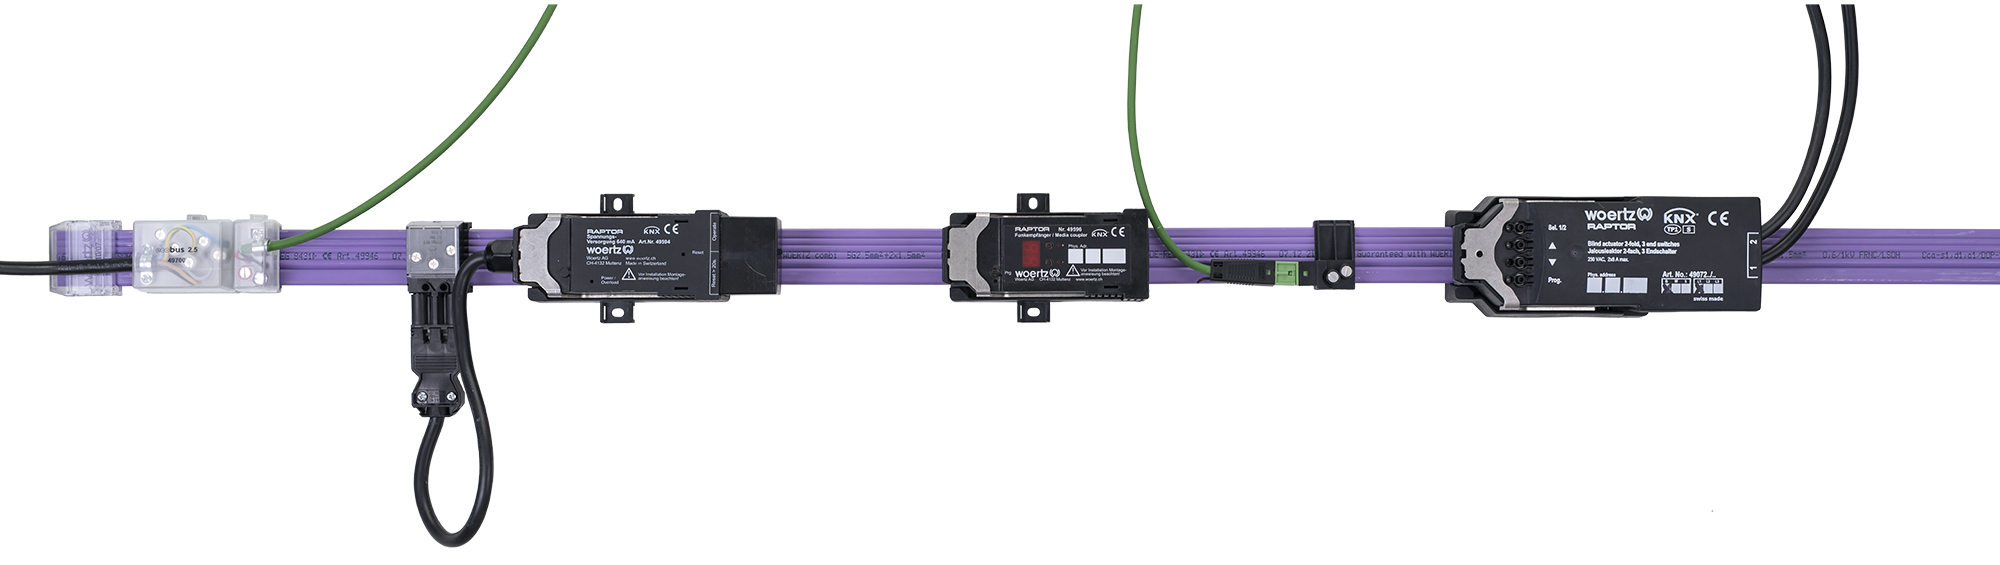 woertz sistema de cable plano combi 5g25 y 2x15 mm2 knx